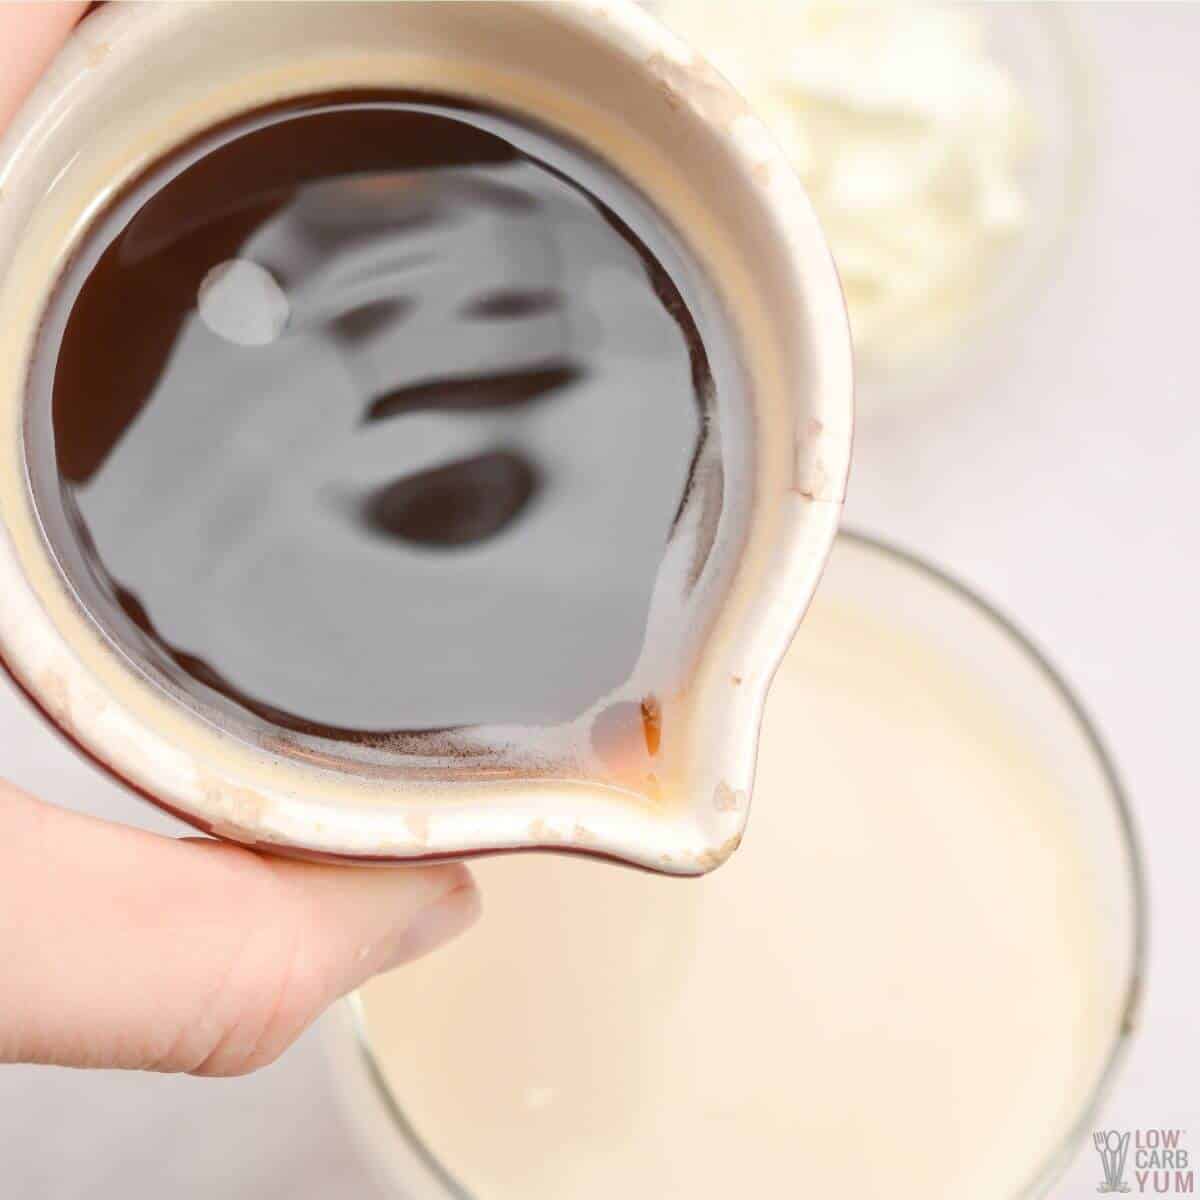 tilsett espresso i varm melk.